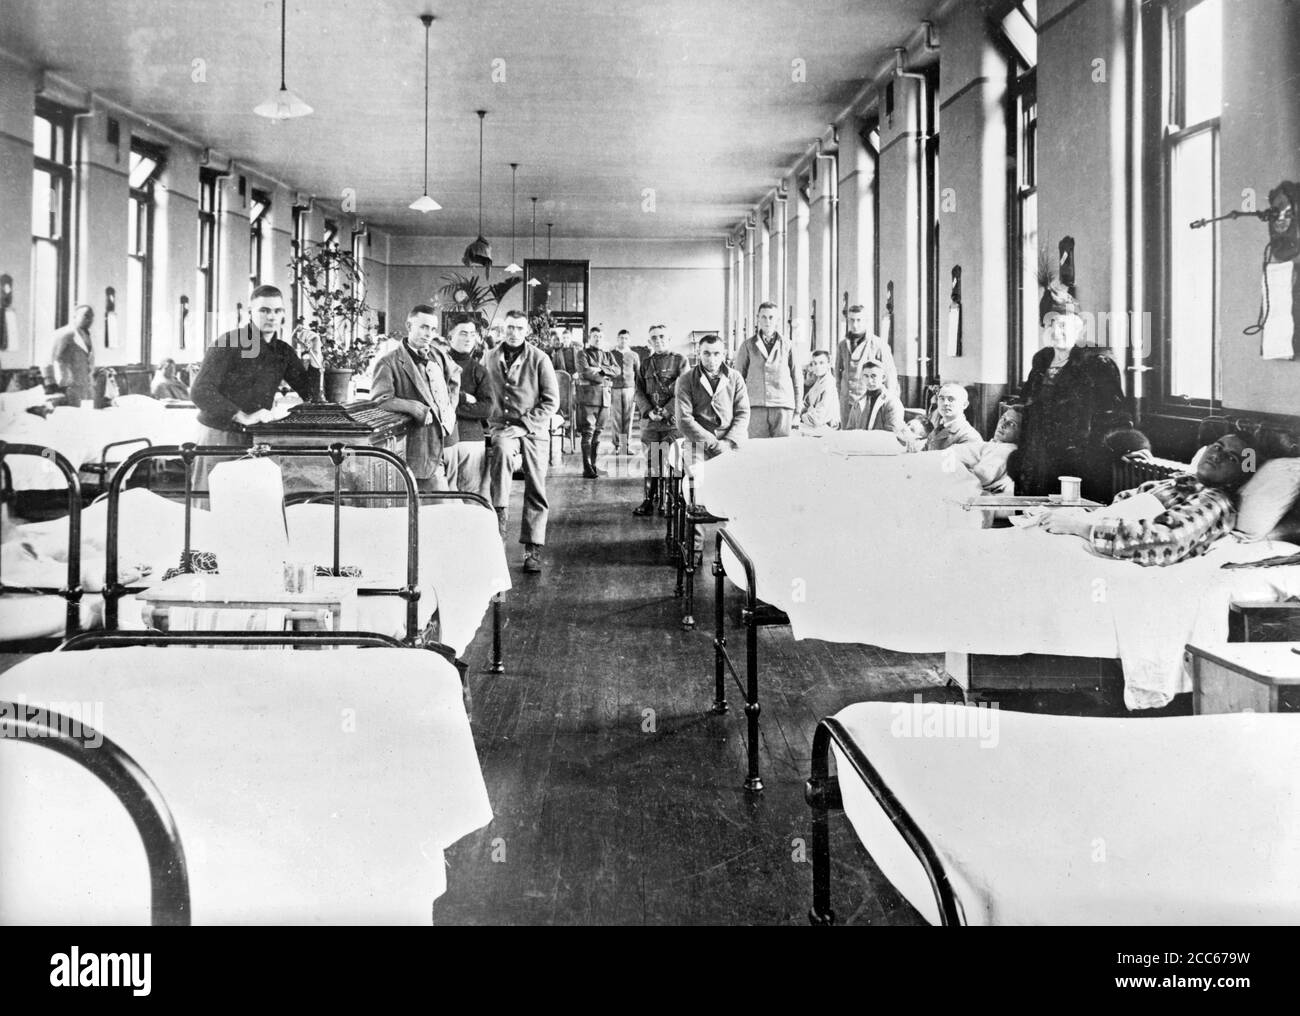 Spanische Grippe 1918. Amerikanische Militärangehörige in einer Grippestation im vierten Scottish General Hospital in Glasgow während der Spanischen Grippe-Pandemie von 1918. Foto aufgenommen im November 1918 Stockfoto